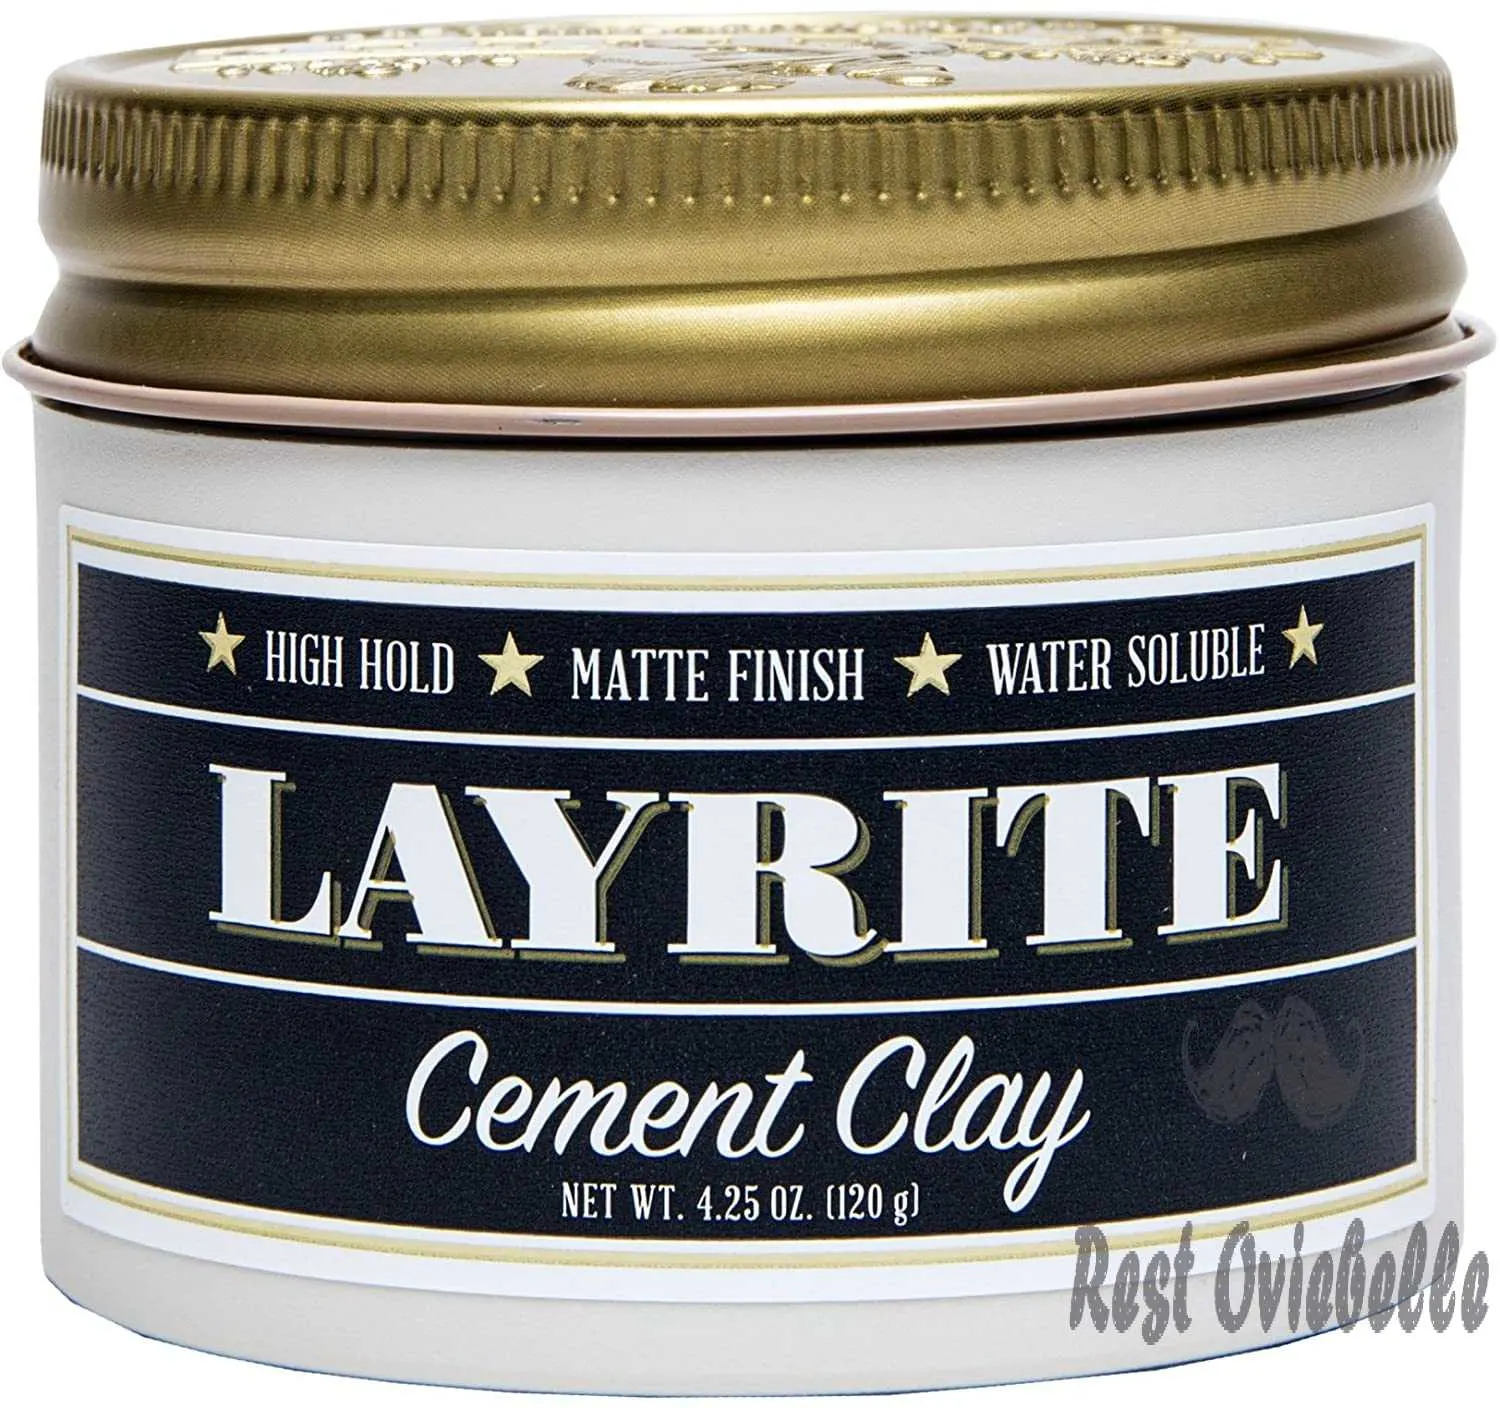 layrite cement clay 4 25 oz b01lxggo5e